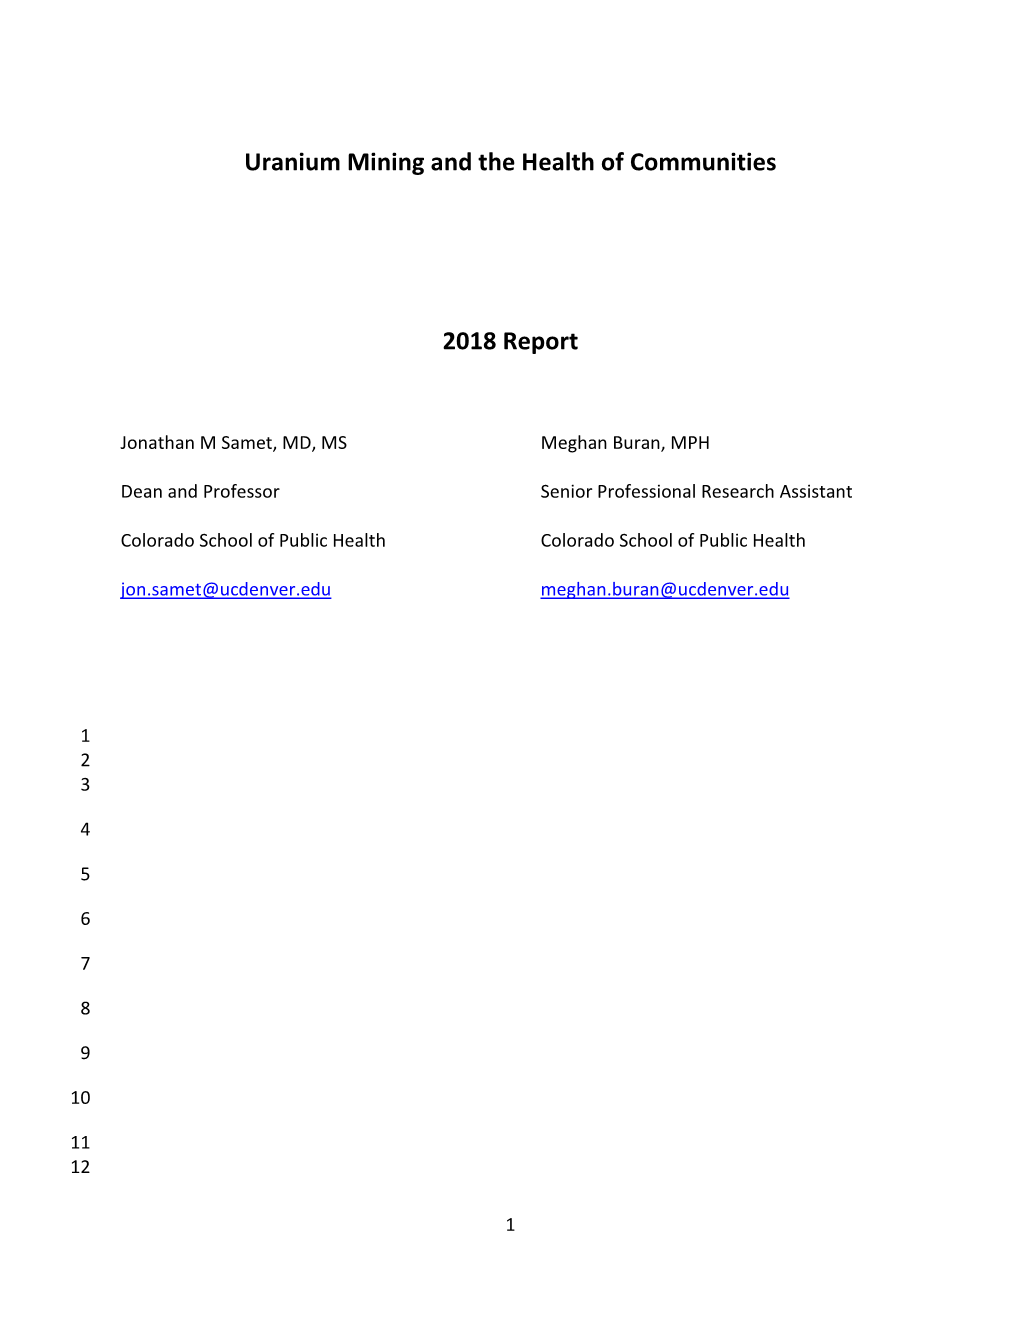 Uranium Mining Report 2018